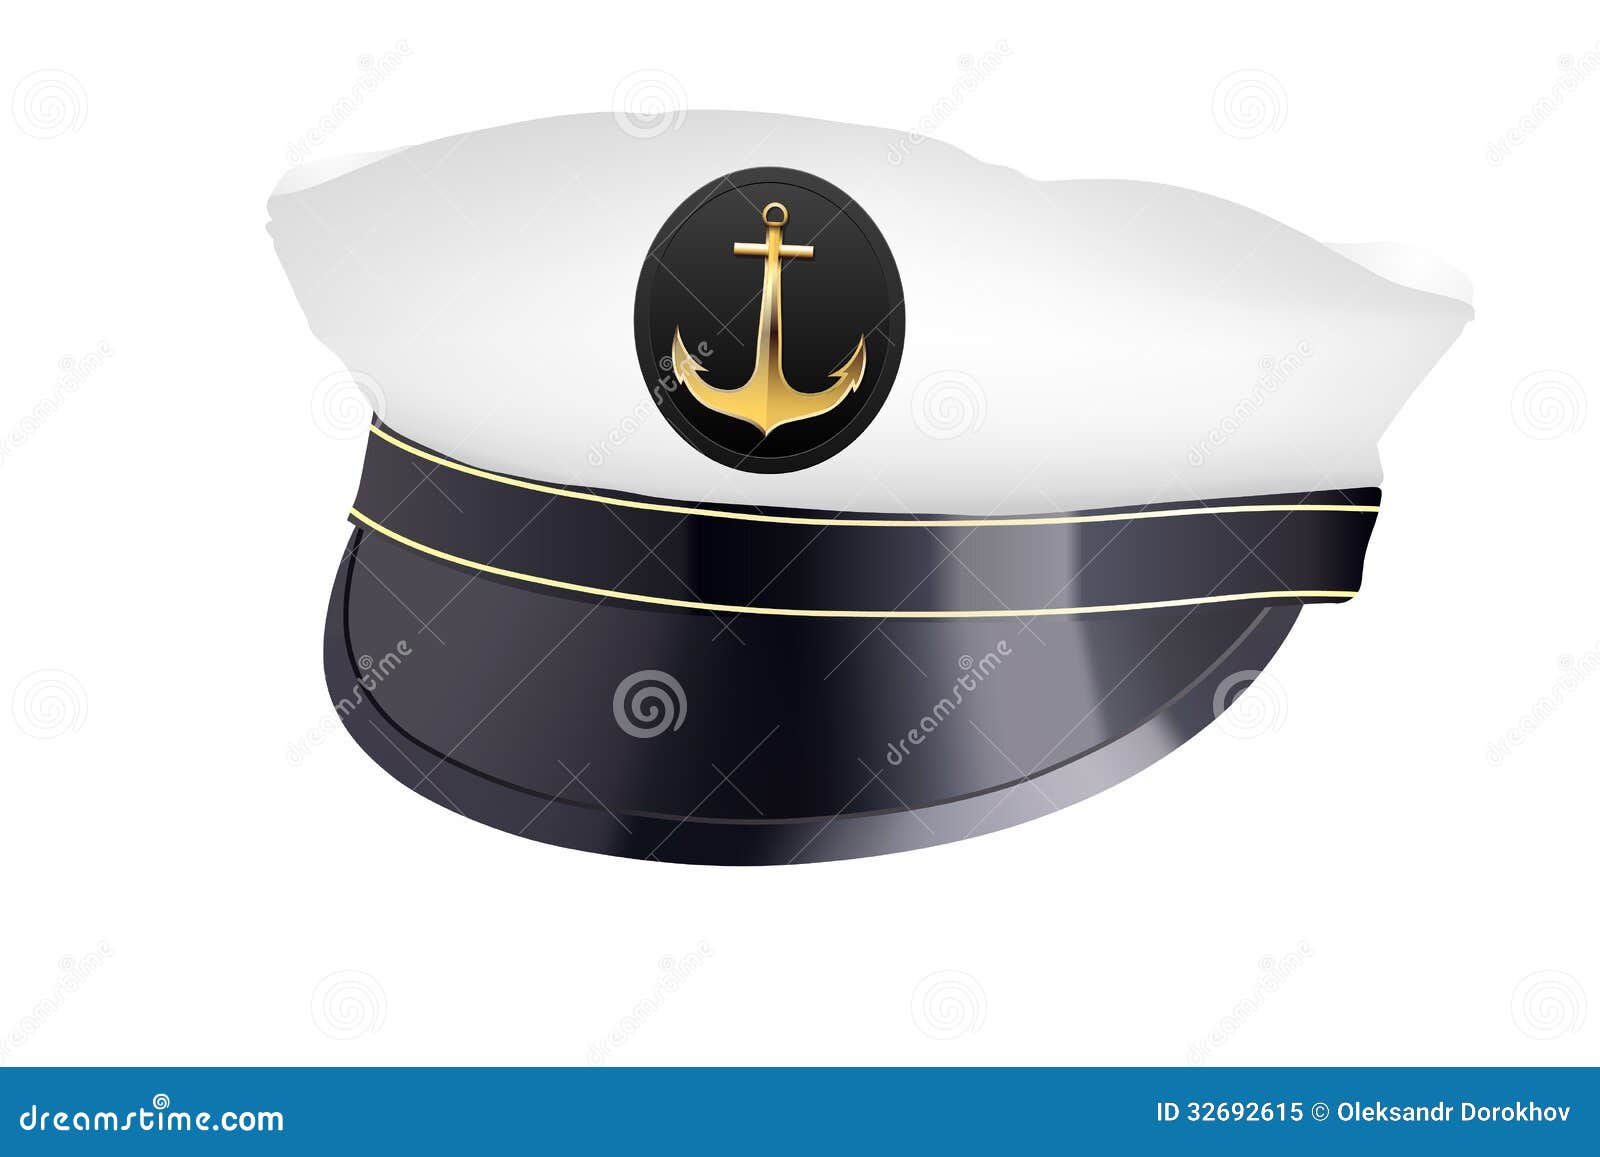 captain hat clipart - photo #10